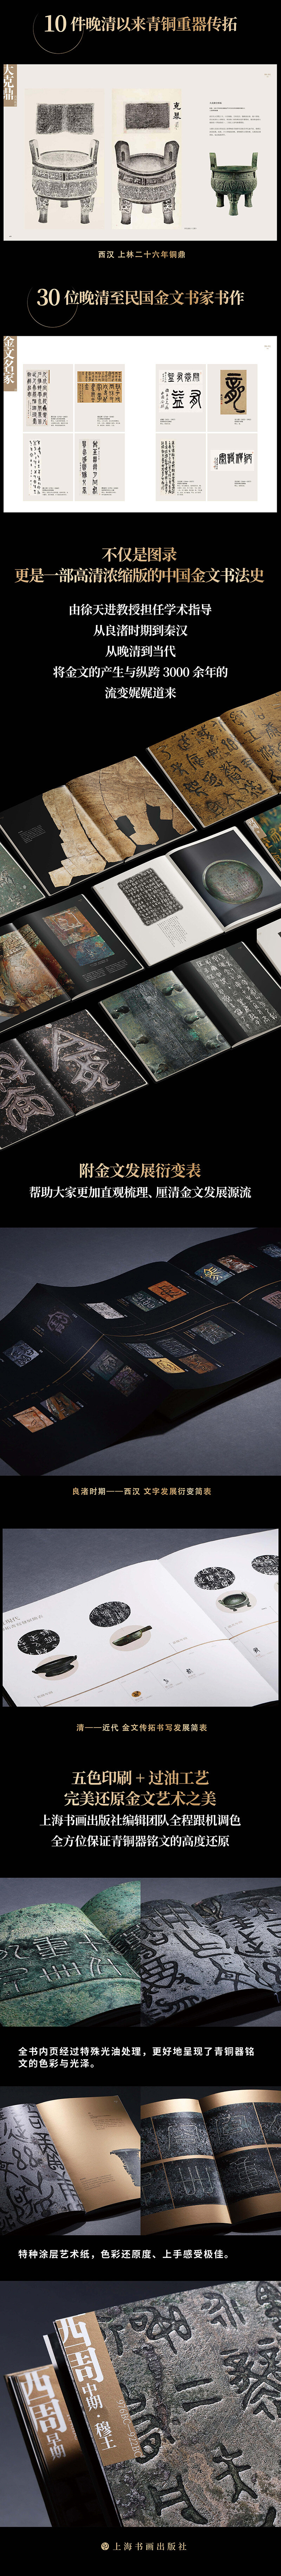 不器：金文名品 杭州市临平博物馆 著 上海书画出版社